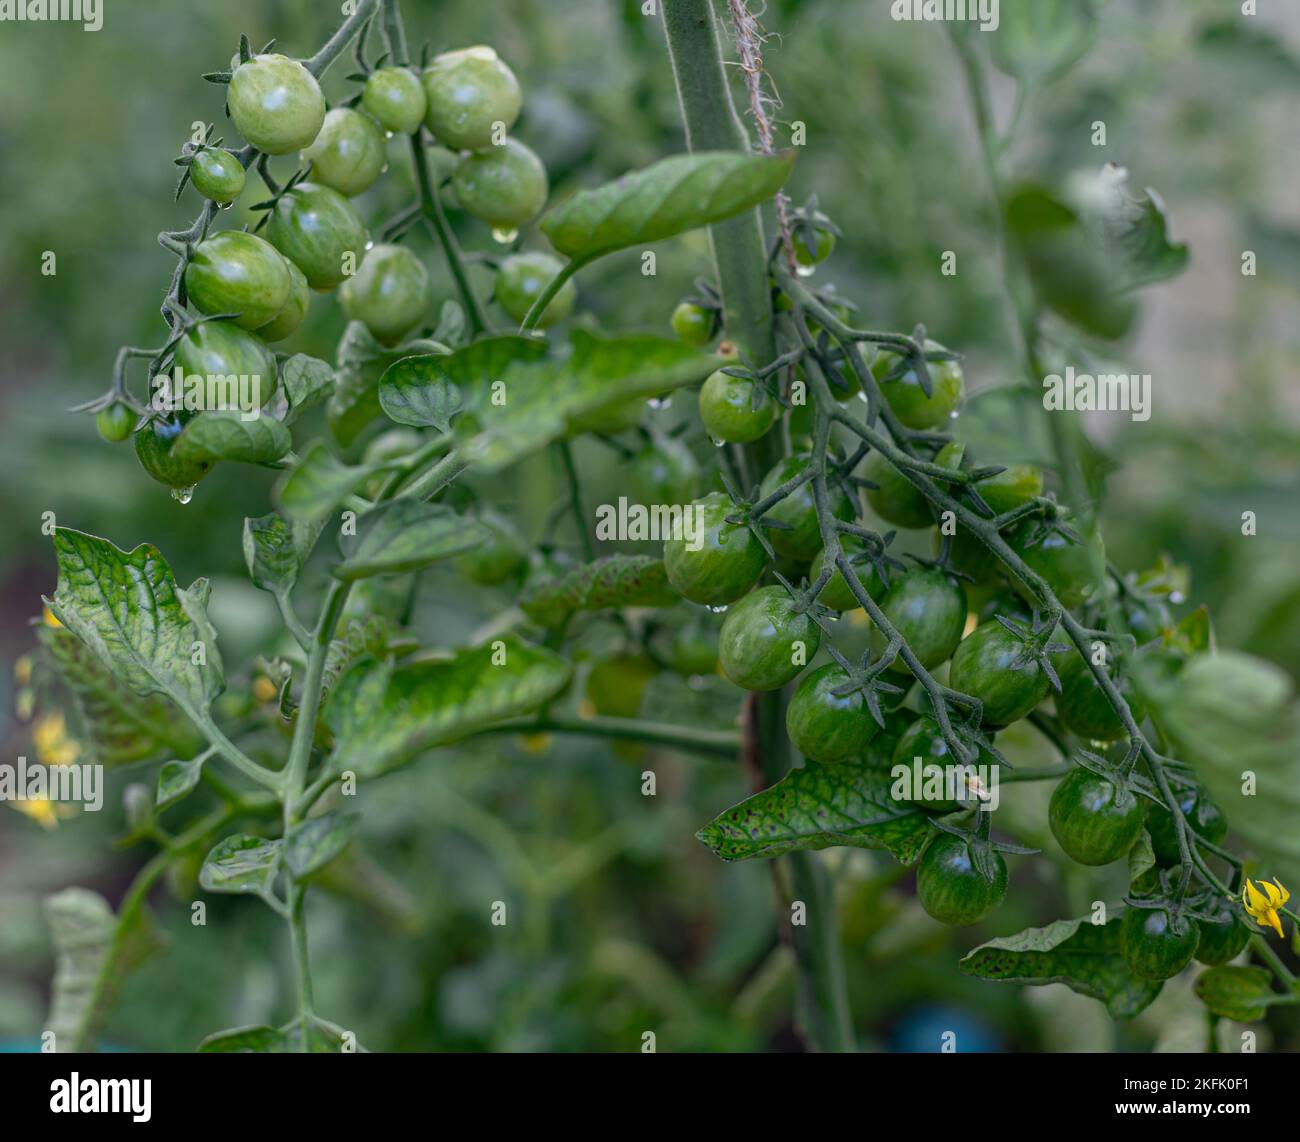 Tomate-Pflanzen im Gewächshaus-grüne Tomaten-Plantage. Ökologischer Landbau, junge Tomaten Pflanzen Wachstum im Gewächshaus. Stockfoto